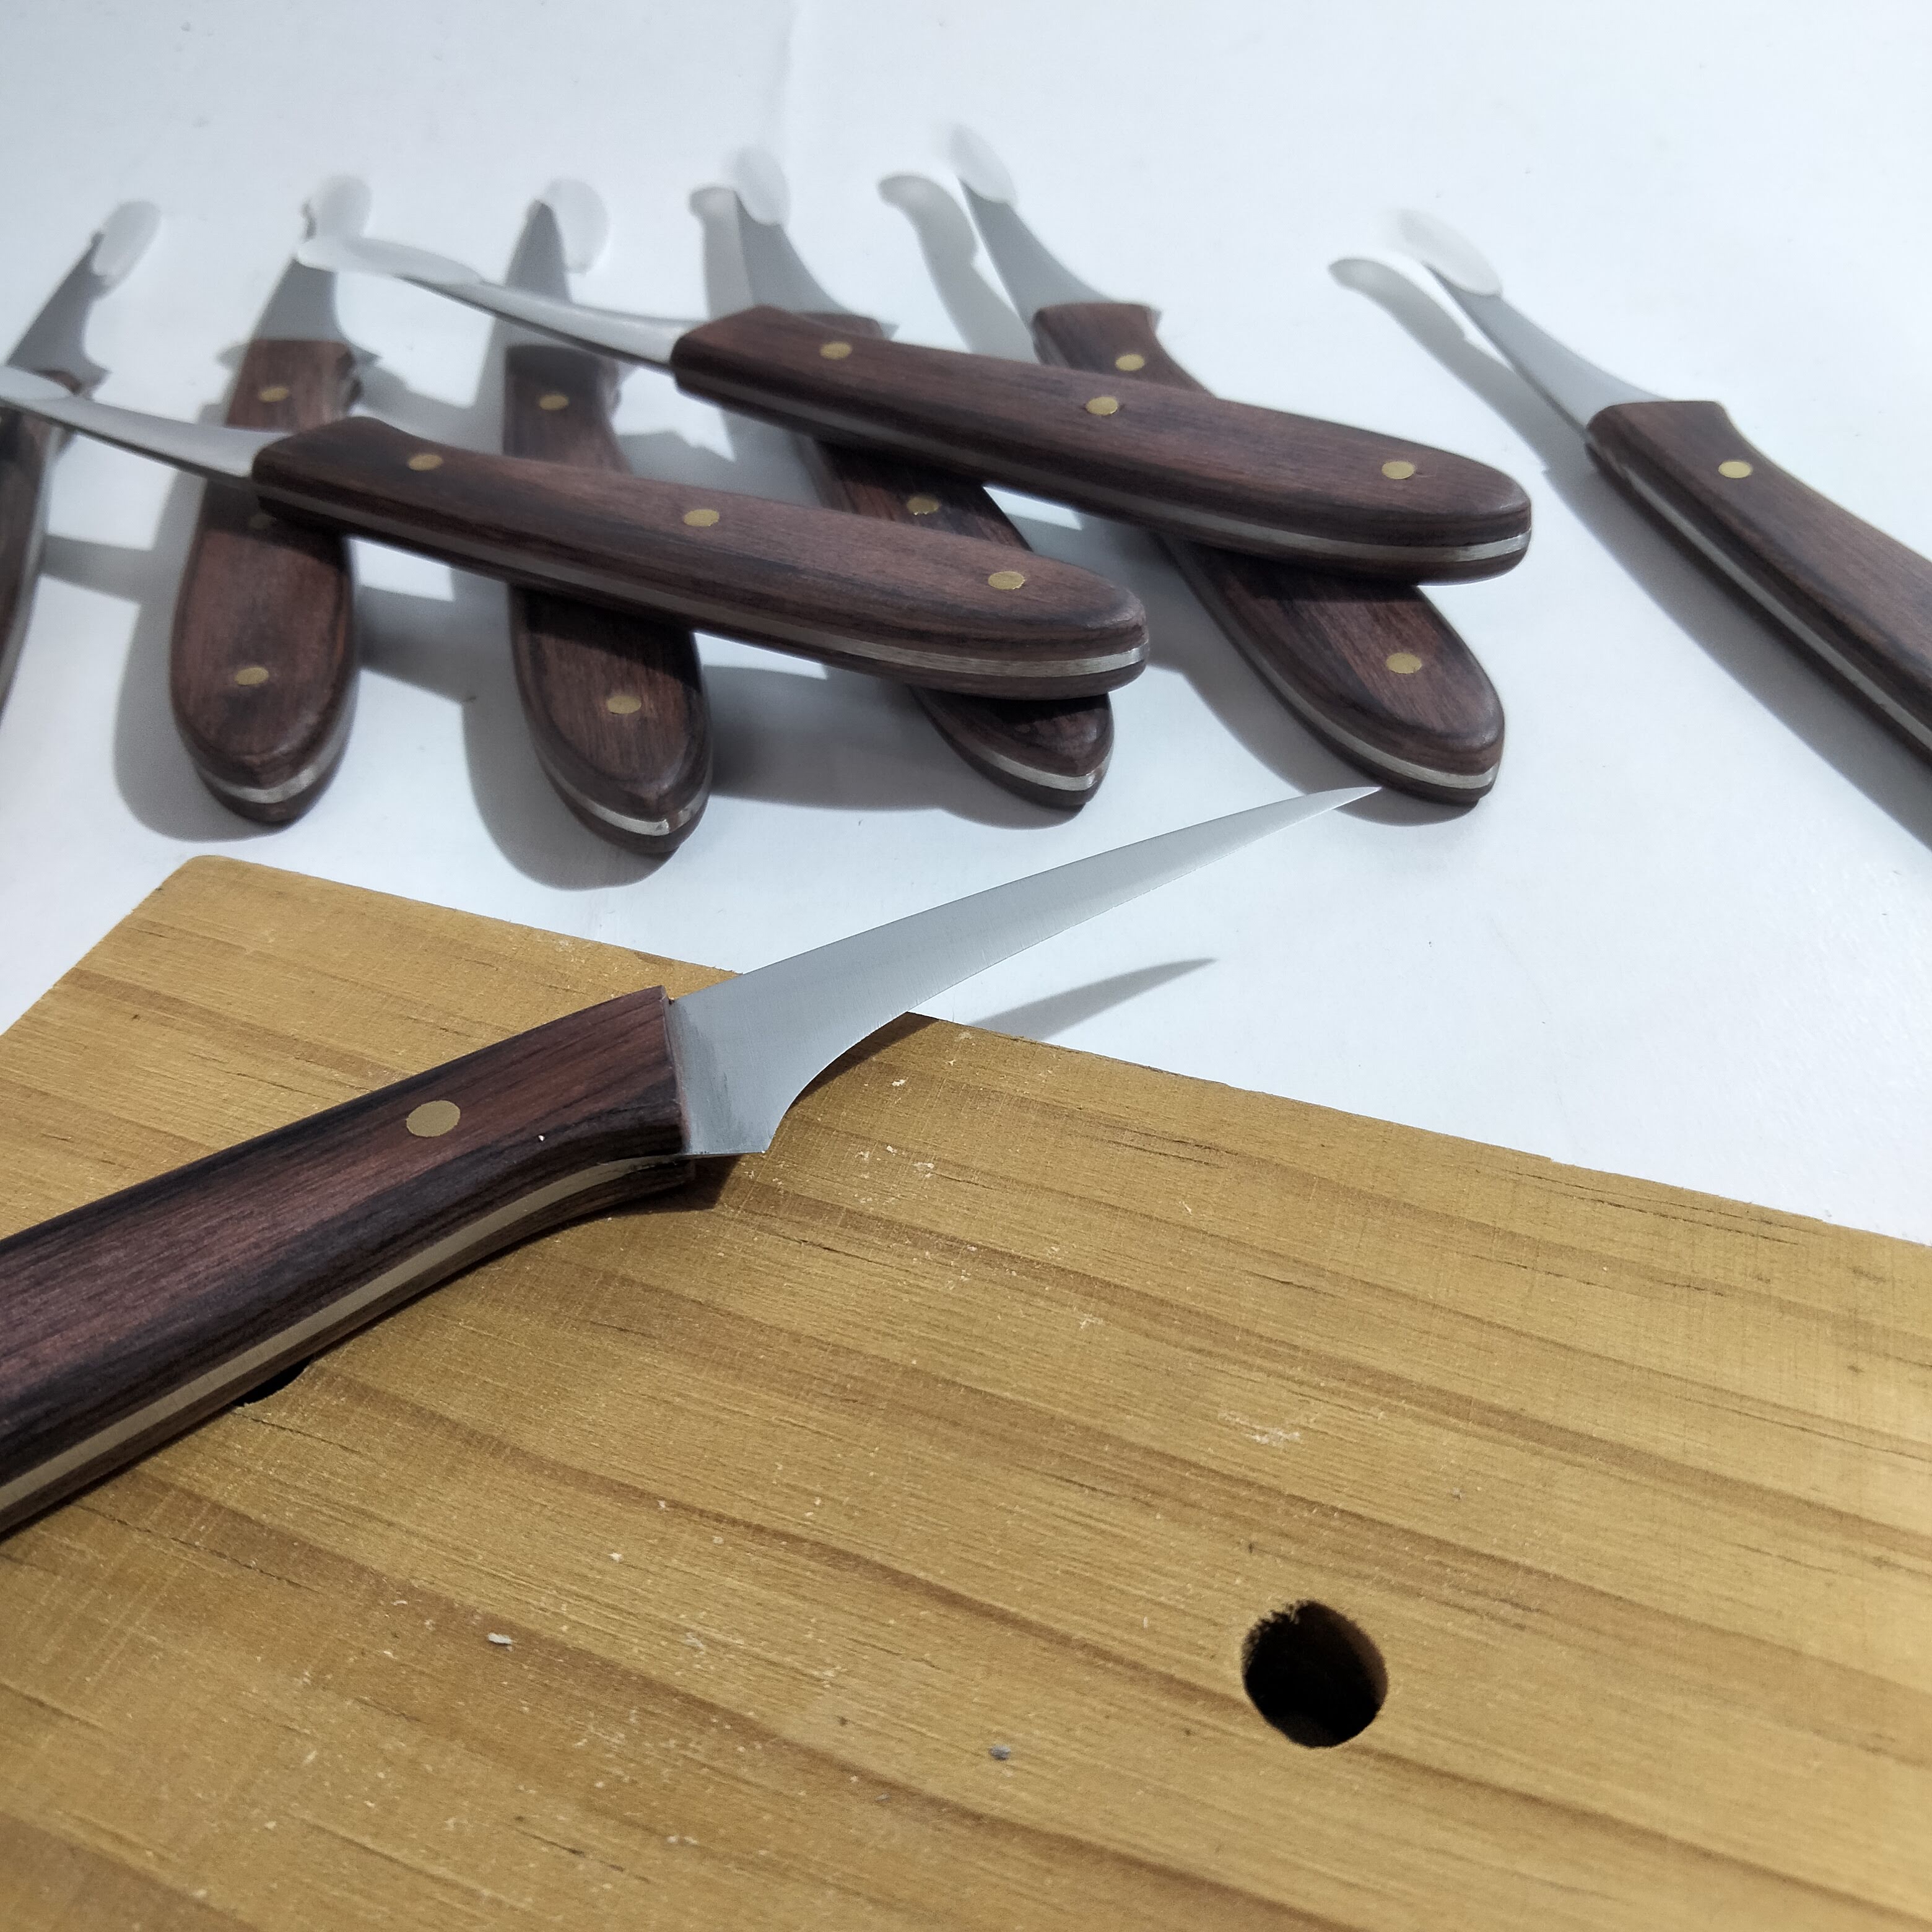 Dao Tỉa hoa Điêu Khắc ngắn Thép Không Rỉ Tỉa Rau Củ Quả Trái Cây siêu sắc cán gỗ_ Carving Knives Tools